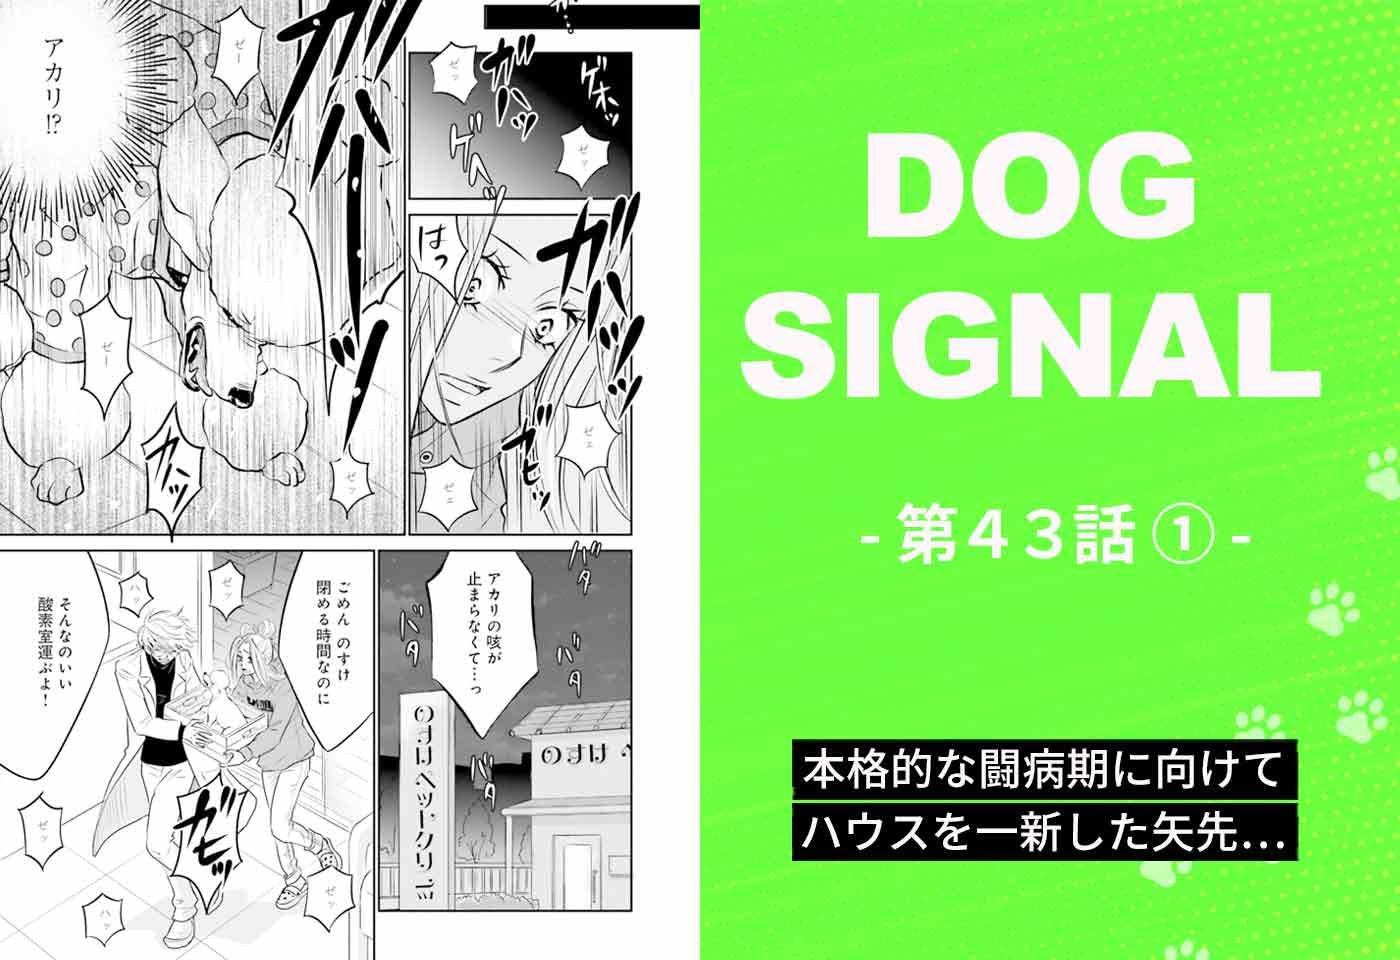 漫画『DOG SIGNAL（ドッグシグナル）』43話目1/4　愛犬・アカリの容体が急変